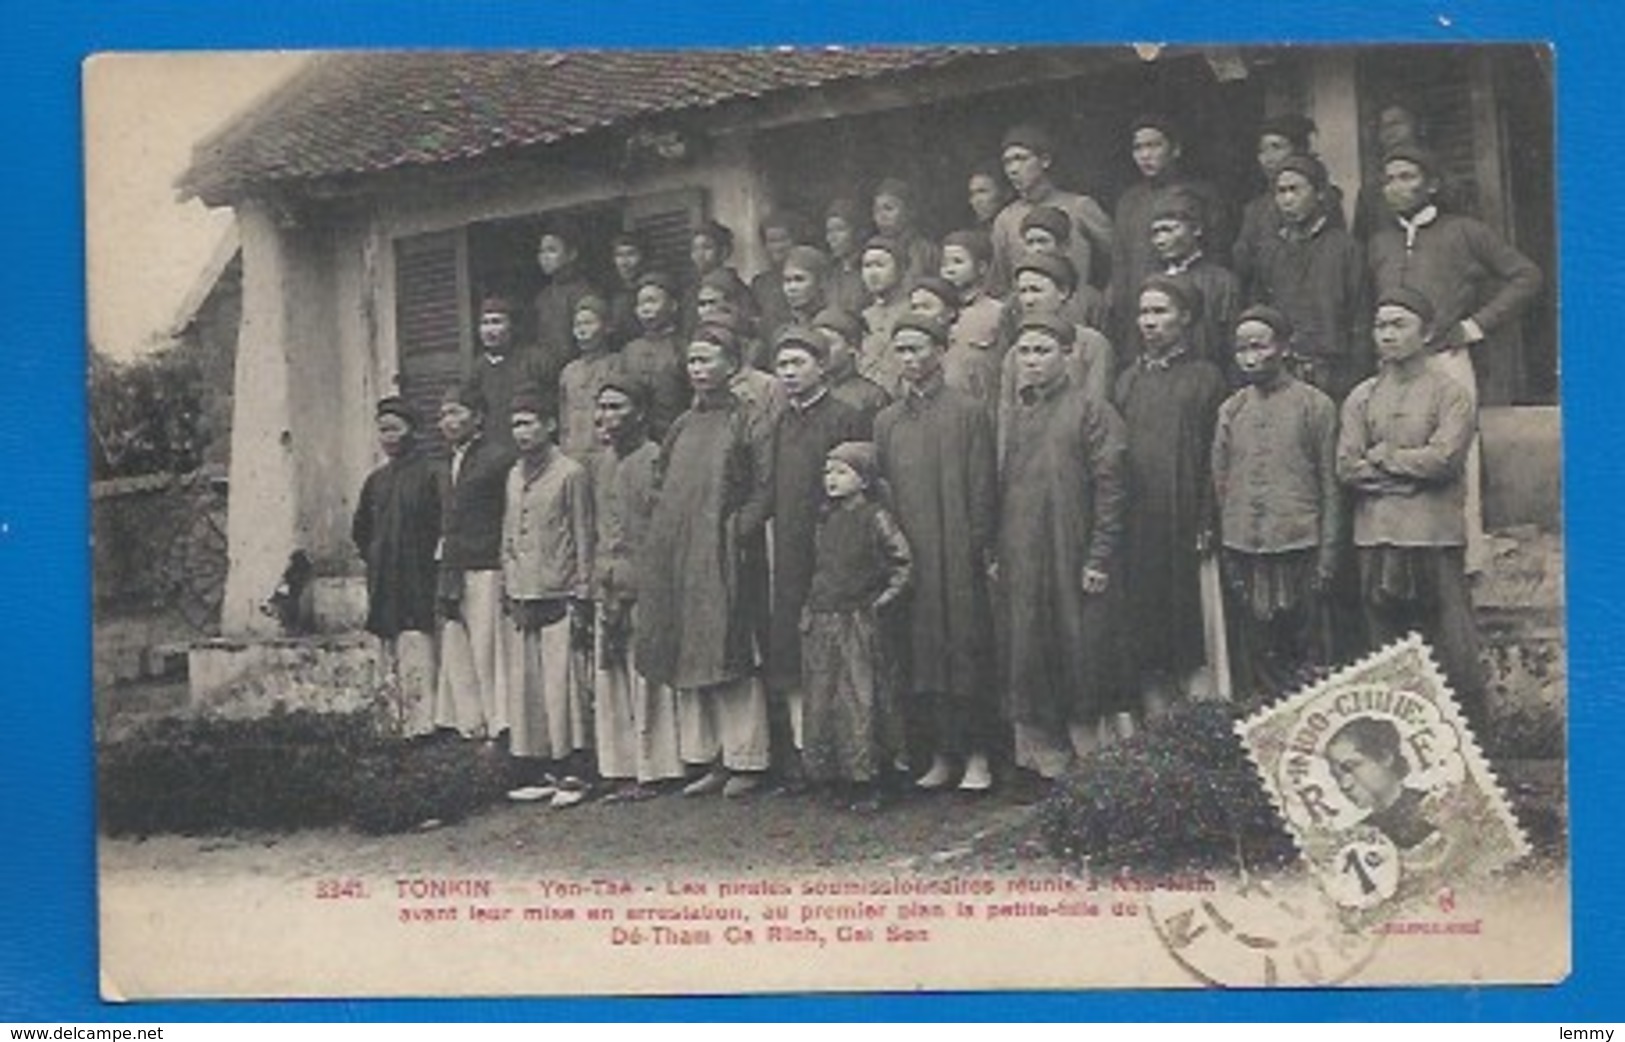 TONKIN - TROUBLES DE SEPTEMBRE 1908 - LA PETITE FILLE DE  DÉ-THAM CA RINH - PIRATES EN ARRESTATION... - Viêt-Nam